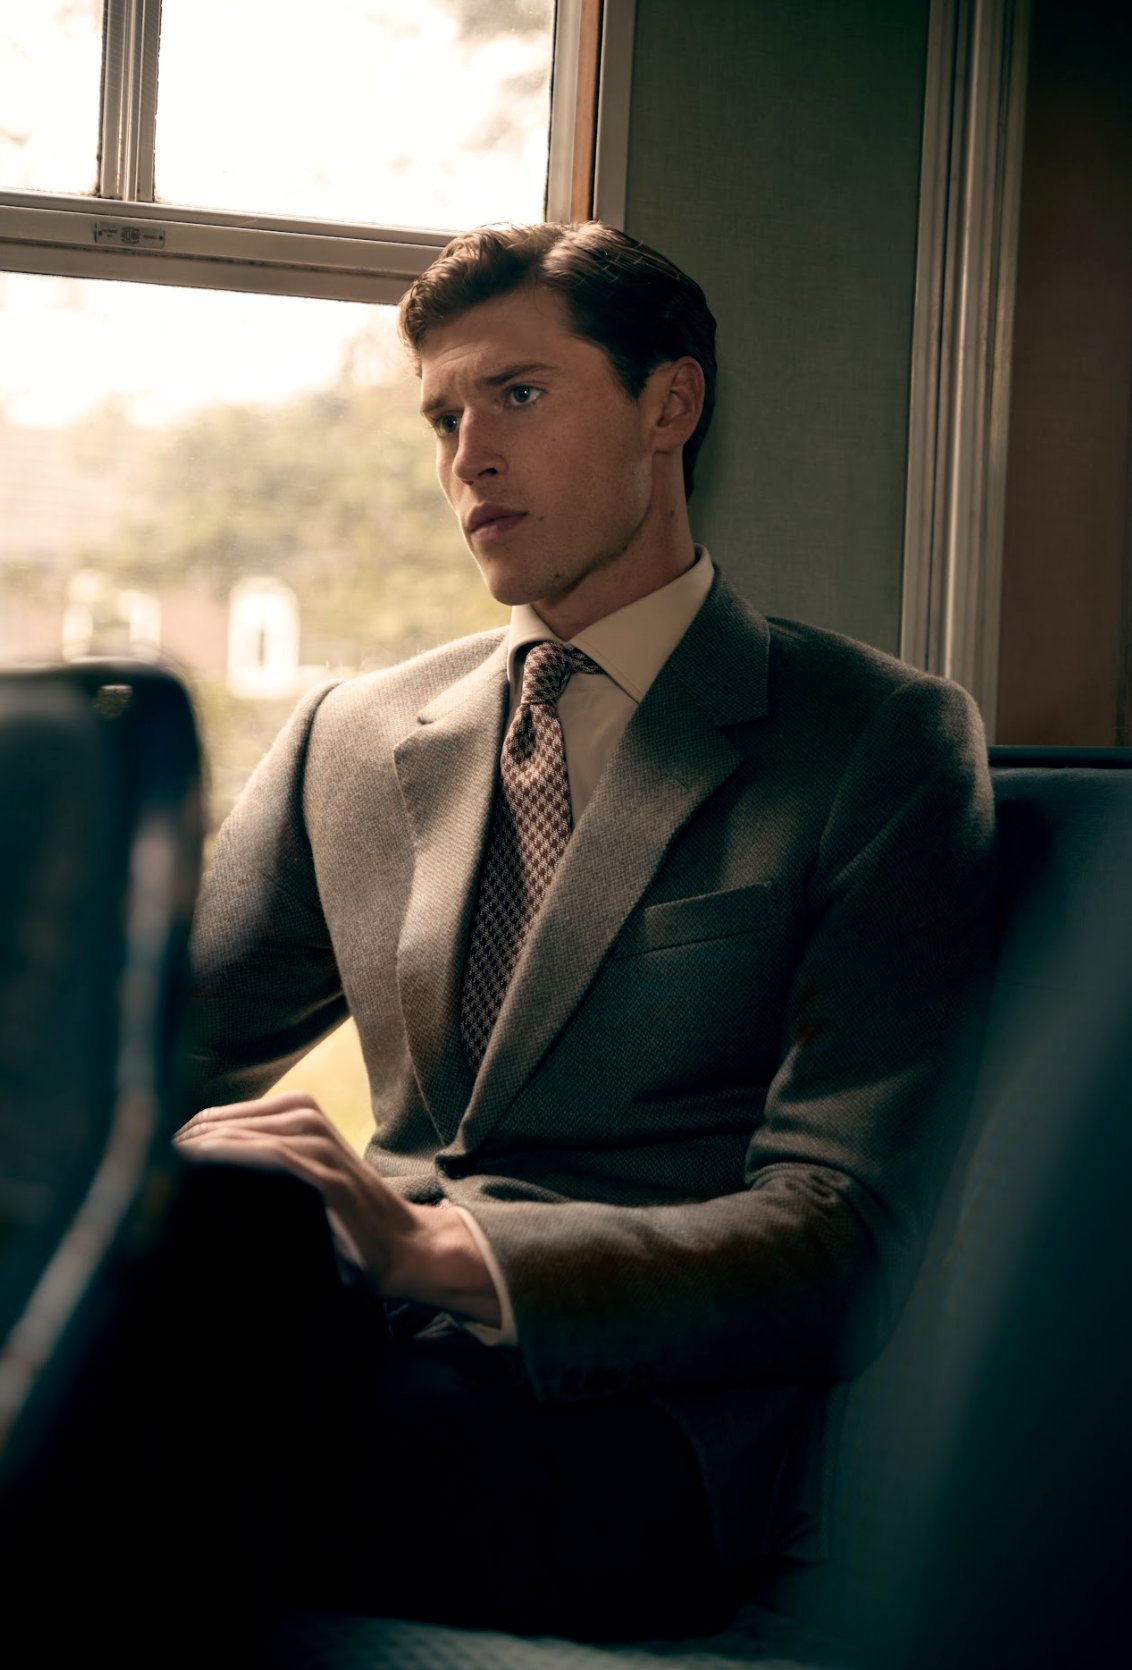 Gentleman in necktie sits on a train